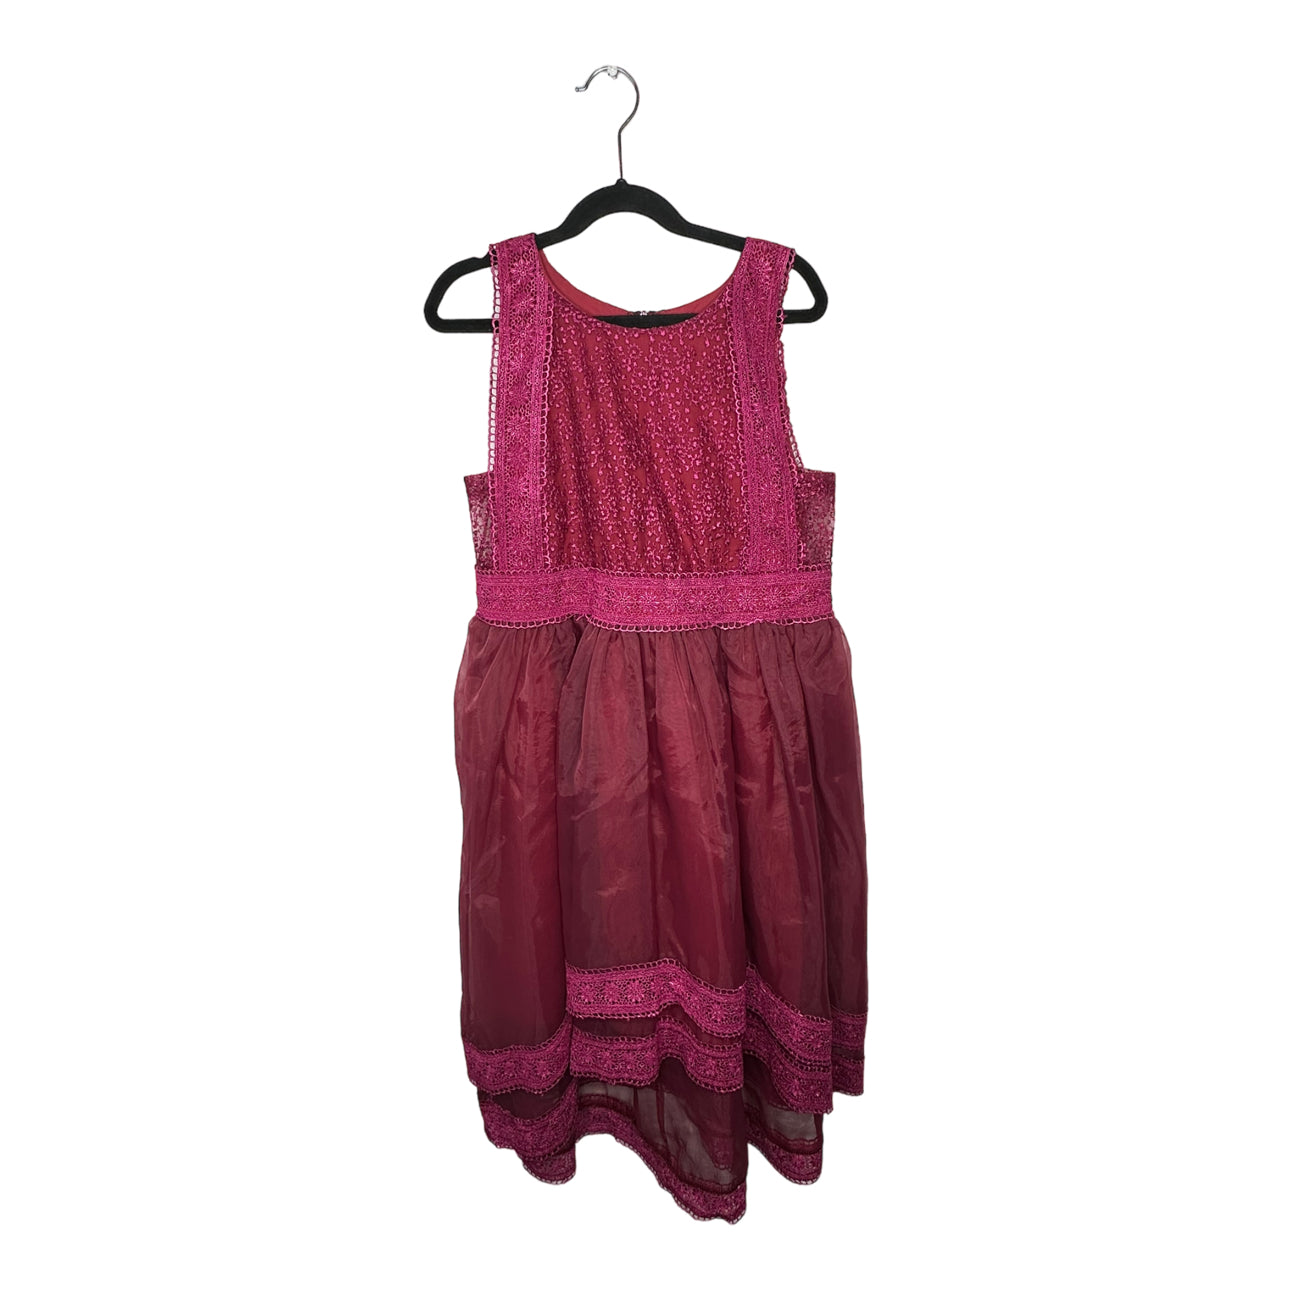 Inset Lace Chiffon Dress